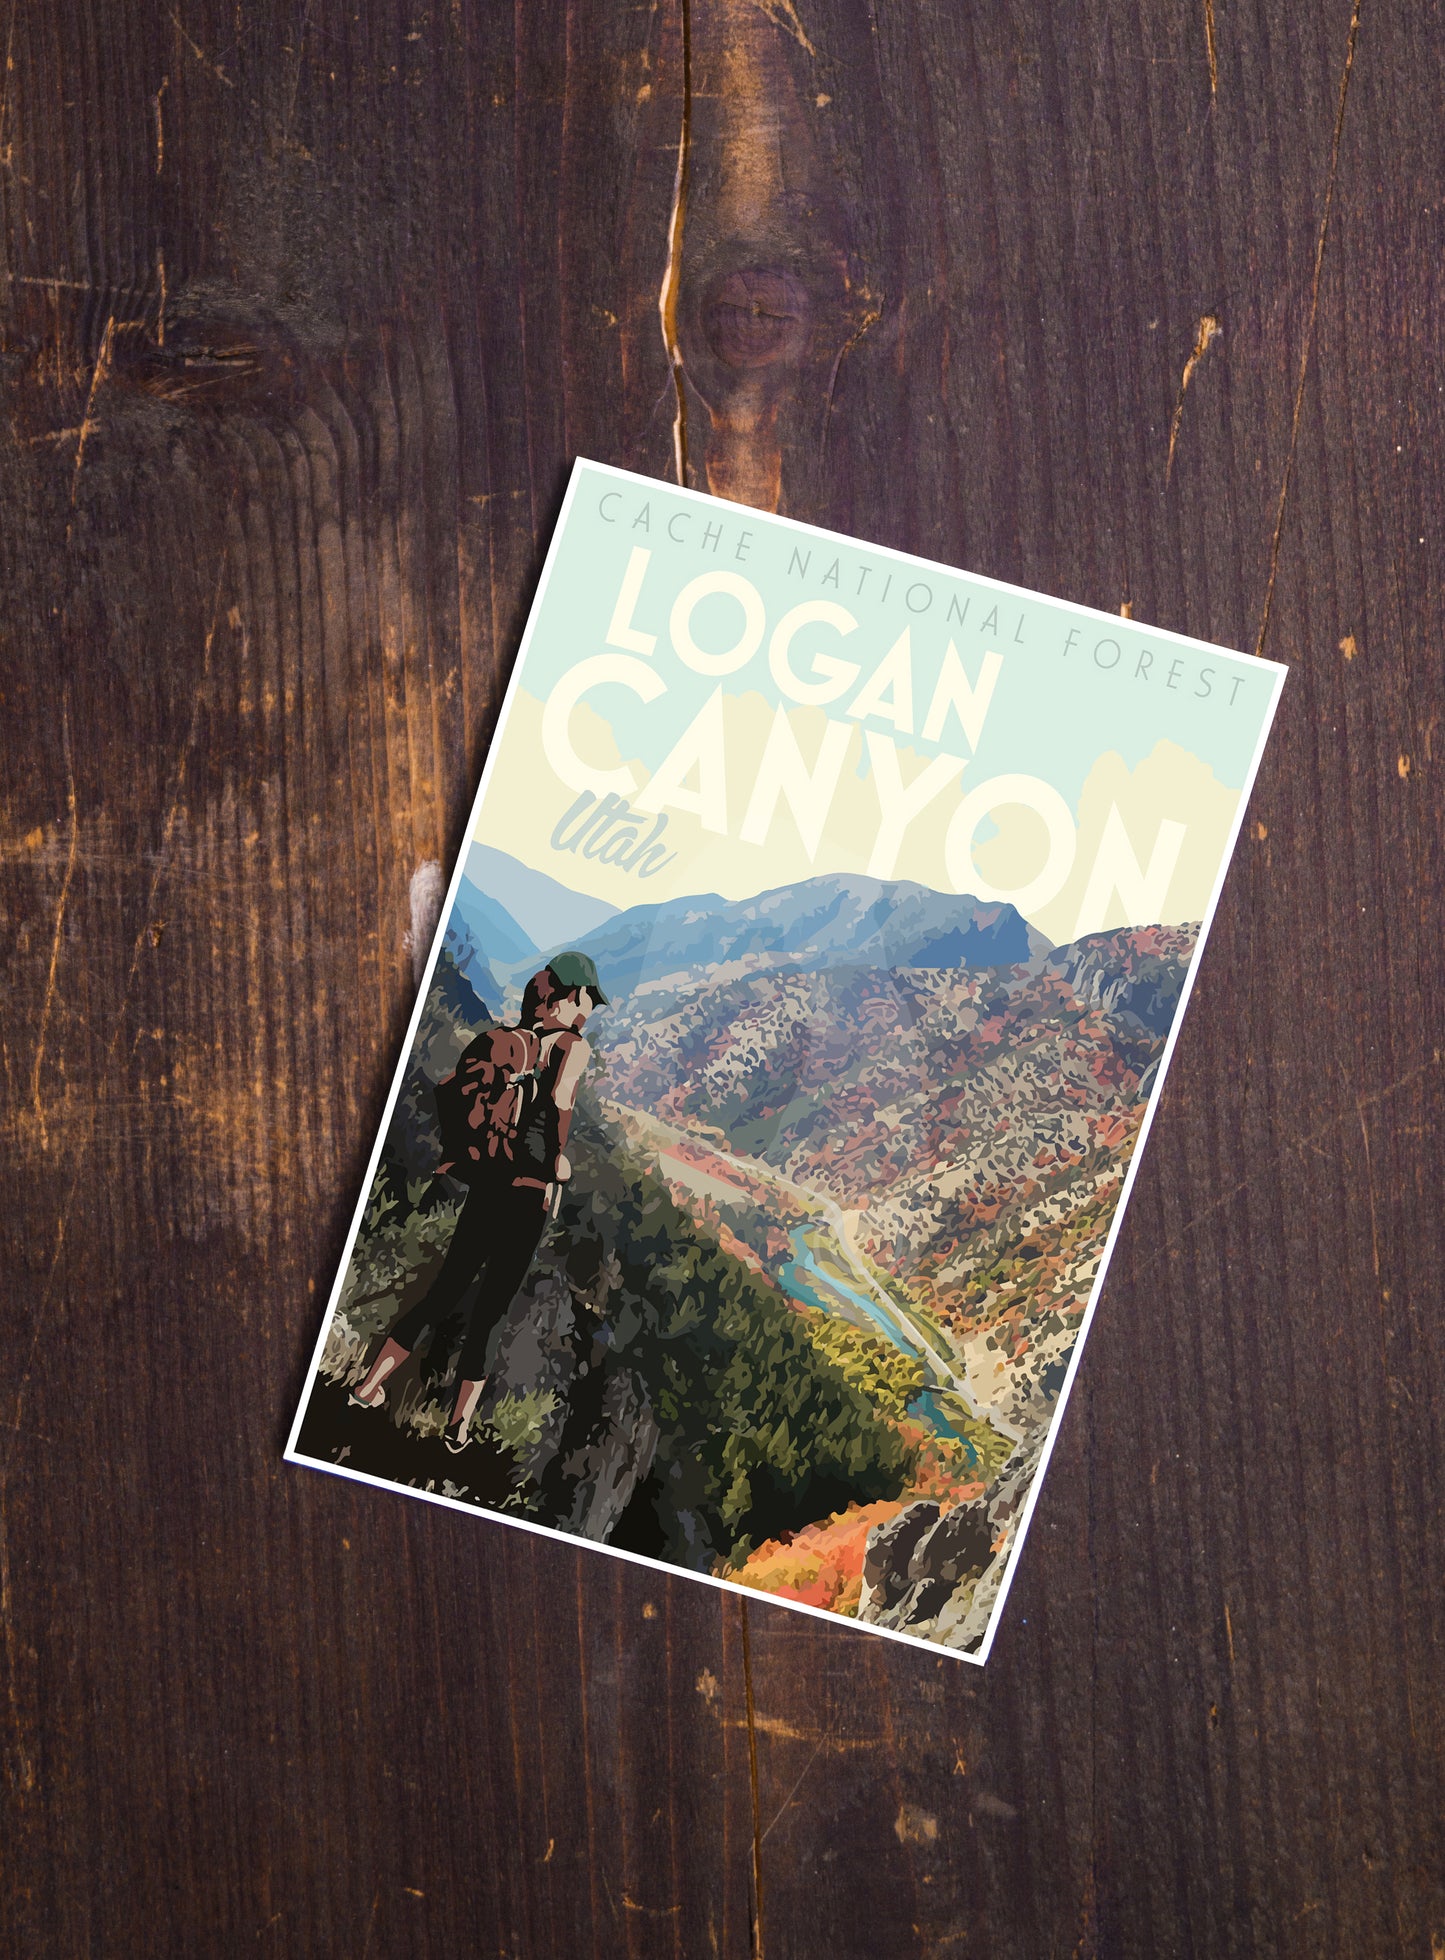 Logan Canyon Utah Print, Logan Canyon Hiking Poster, Utah Hiking Print, Logan Canyon Art